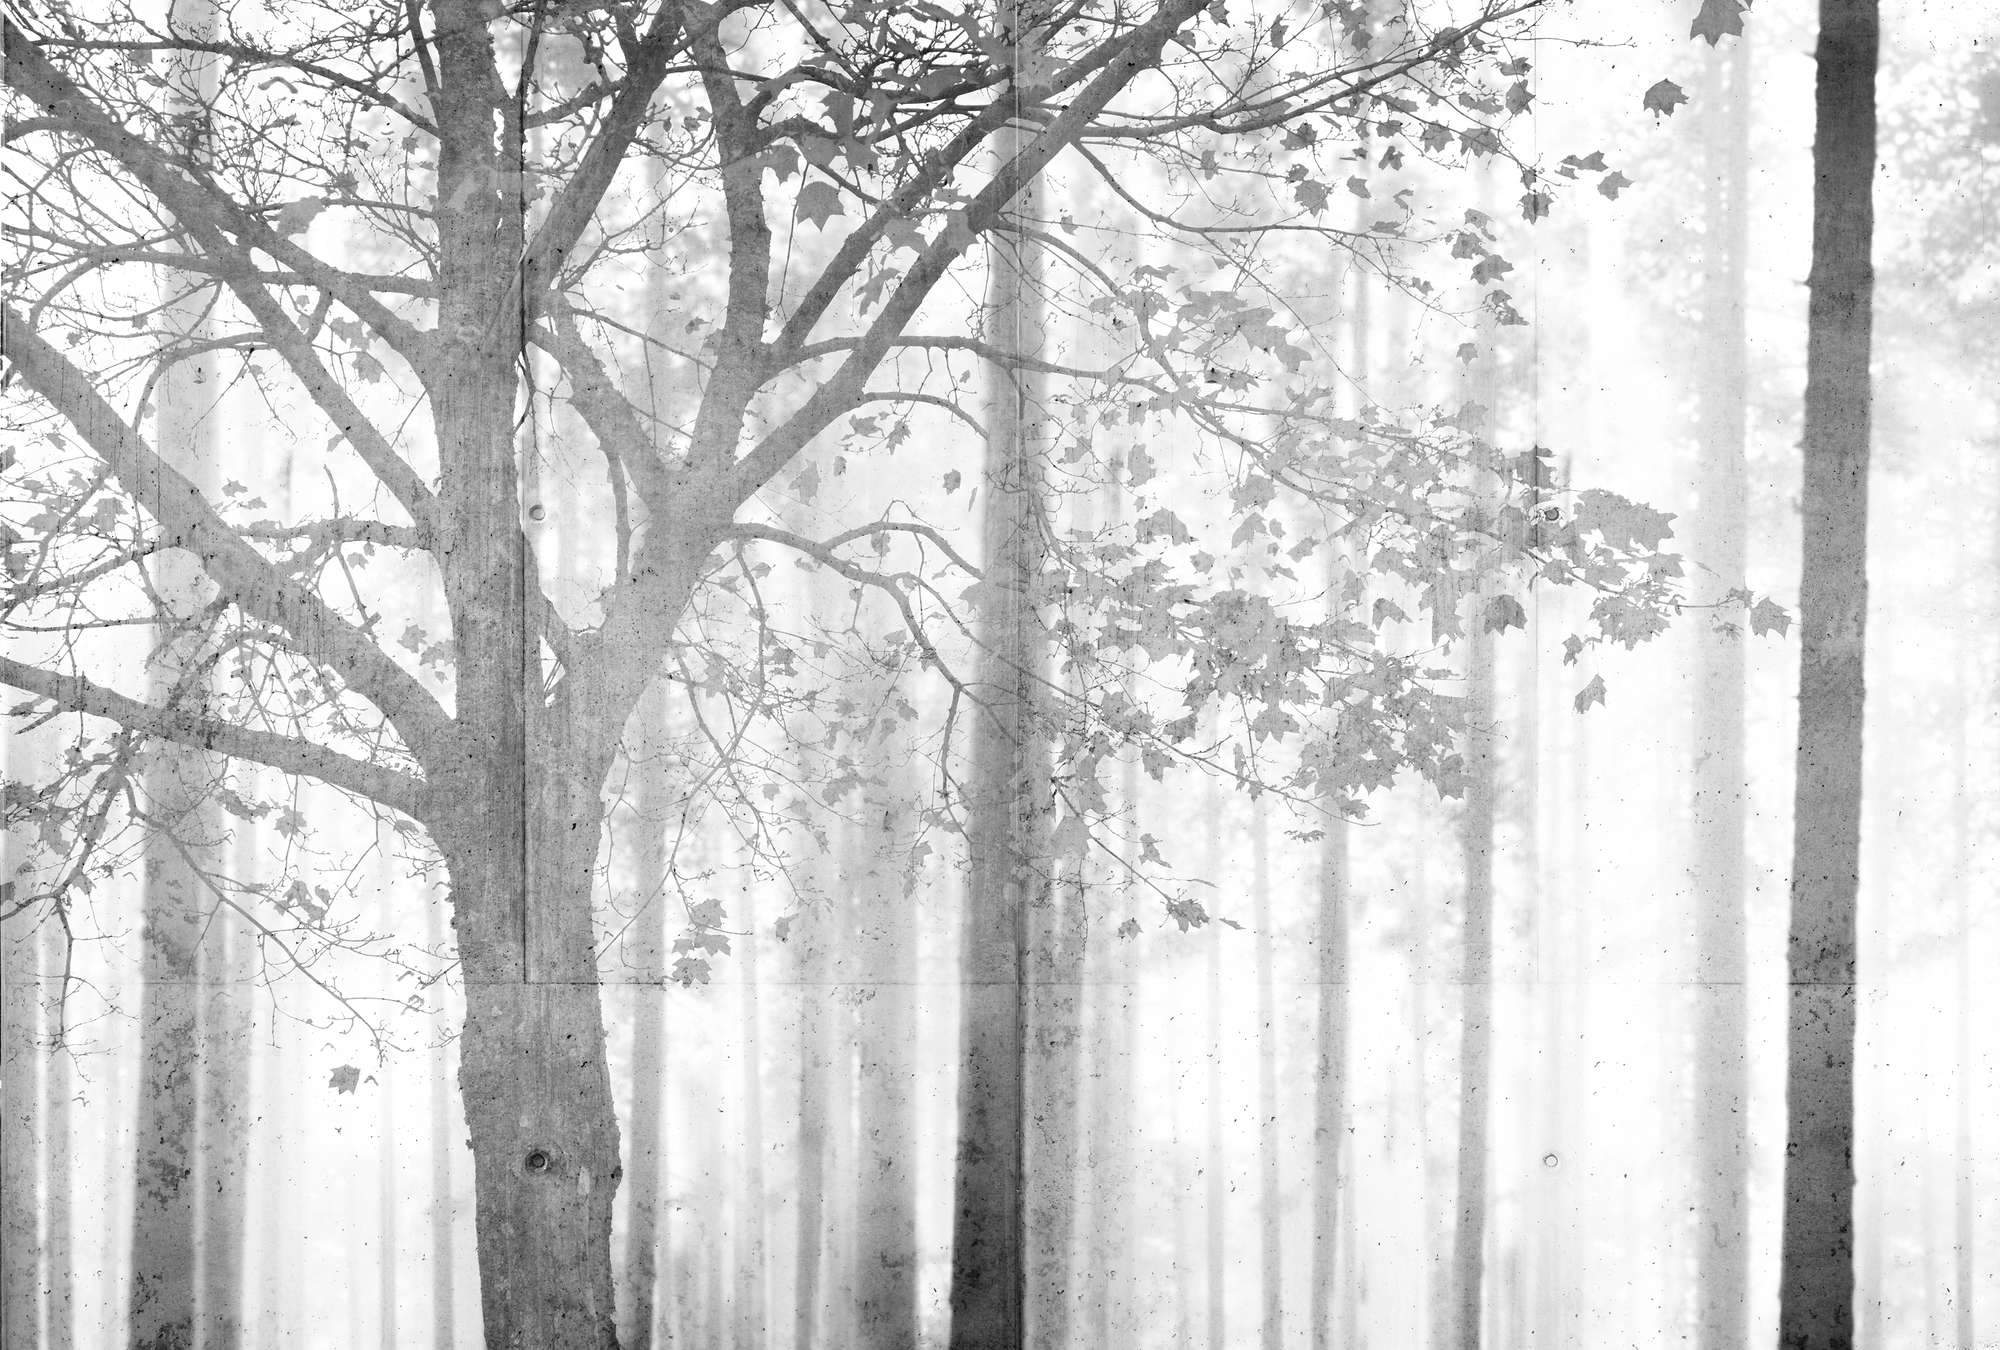             Fotomurali Foresta in bianco e nero con sfumature grigie - Grigio, bianco, nero
        